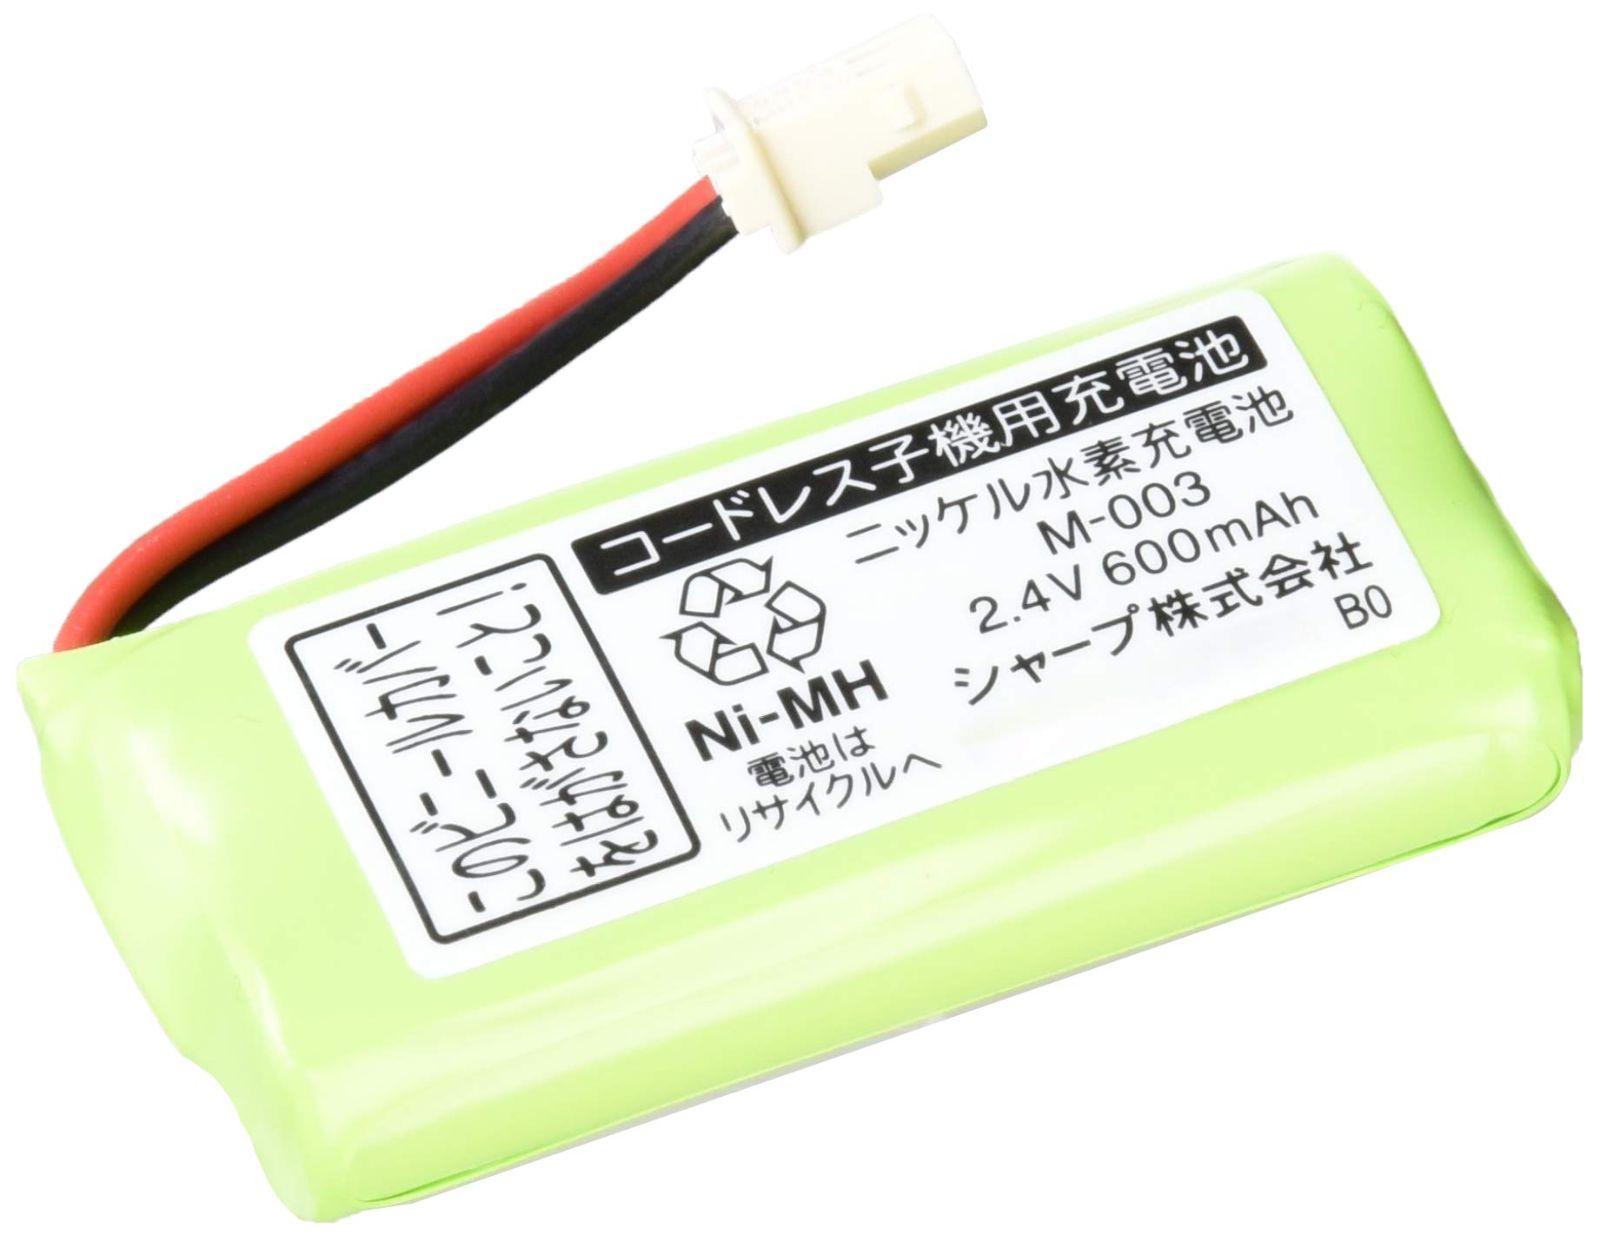 特価商品】シャープ コードレス子機用充電池 メーカー純正品 JD-M003